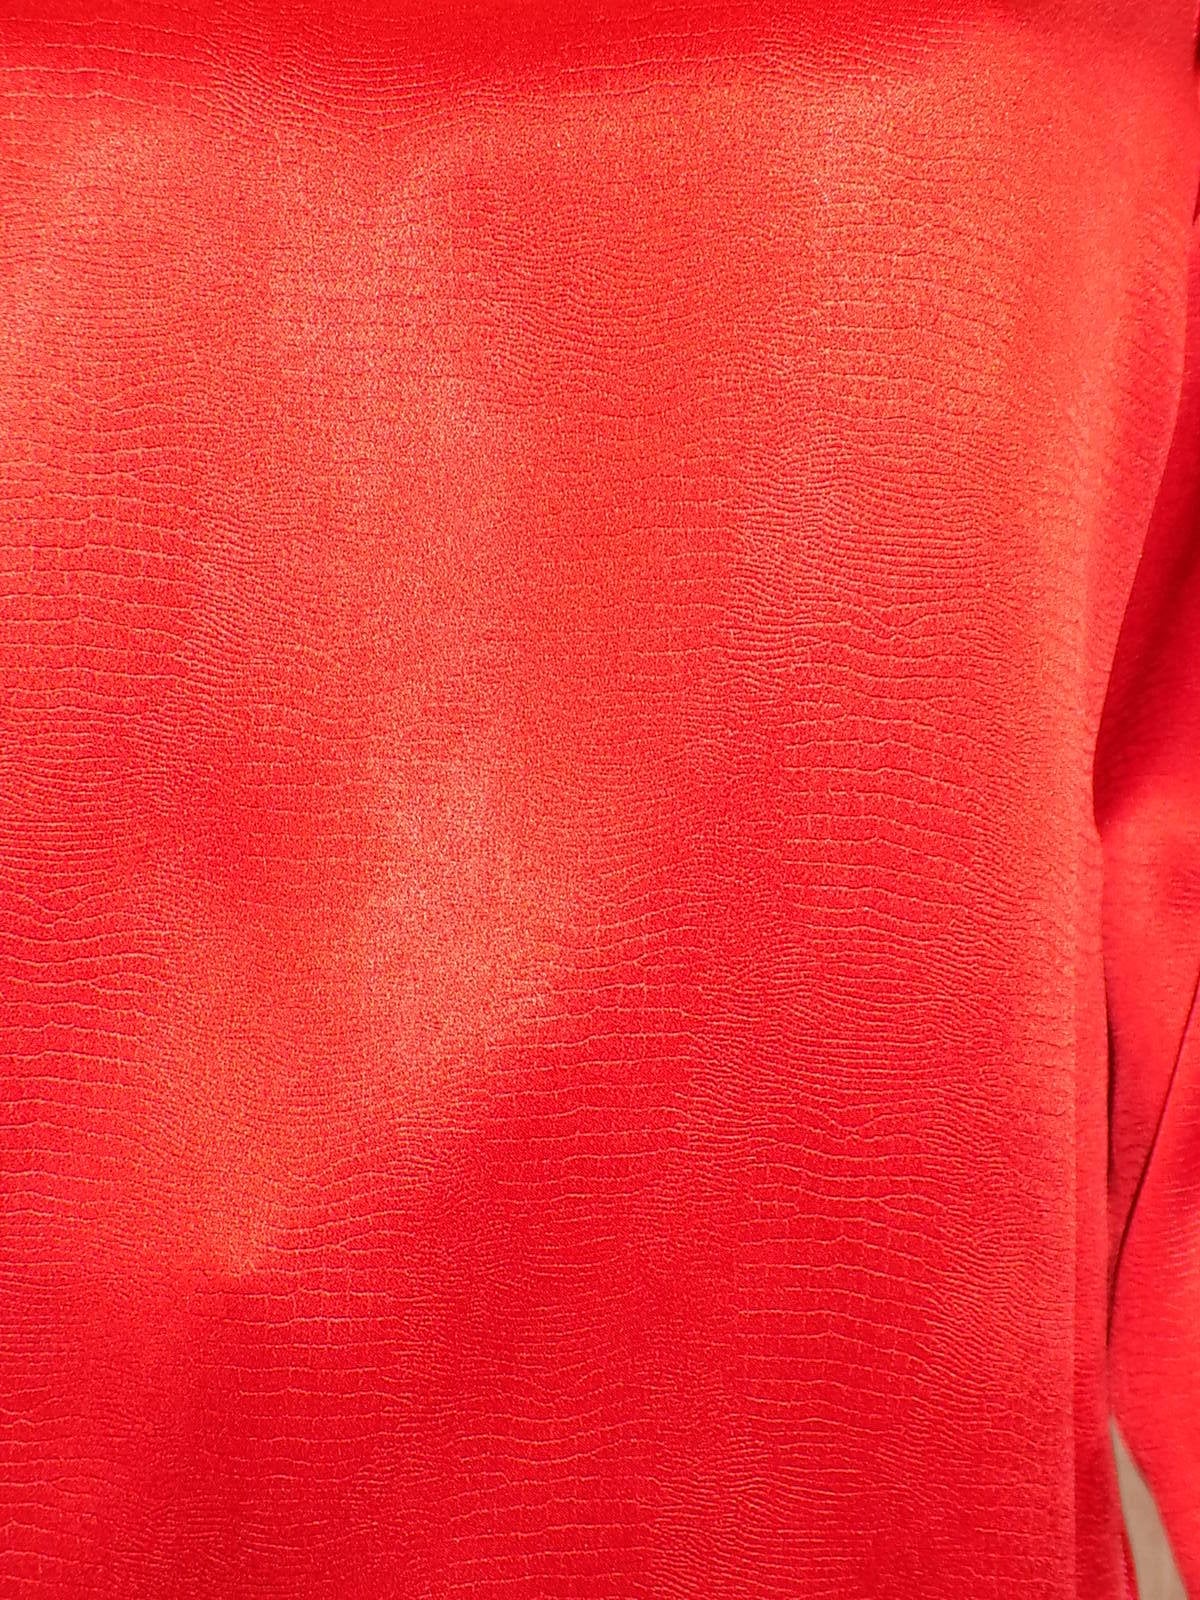 Women's Yves Saint Laurent Red liquid silk Pants and Blouse set ensamble